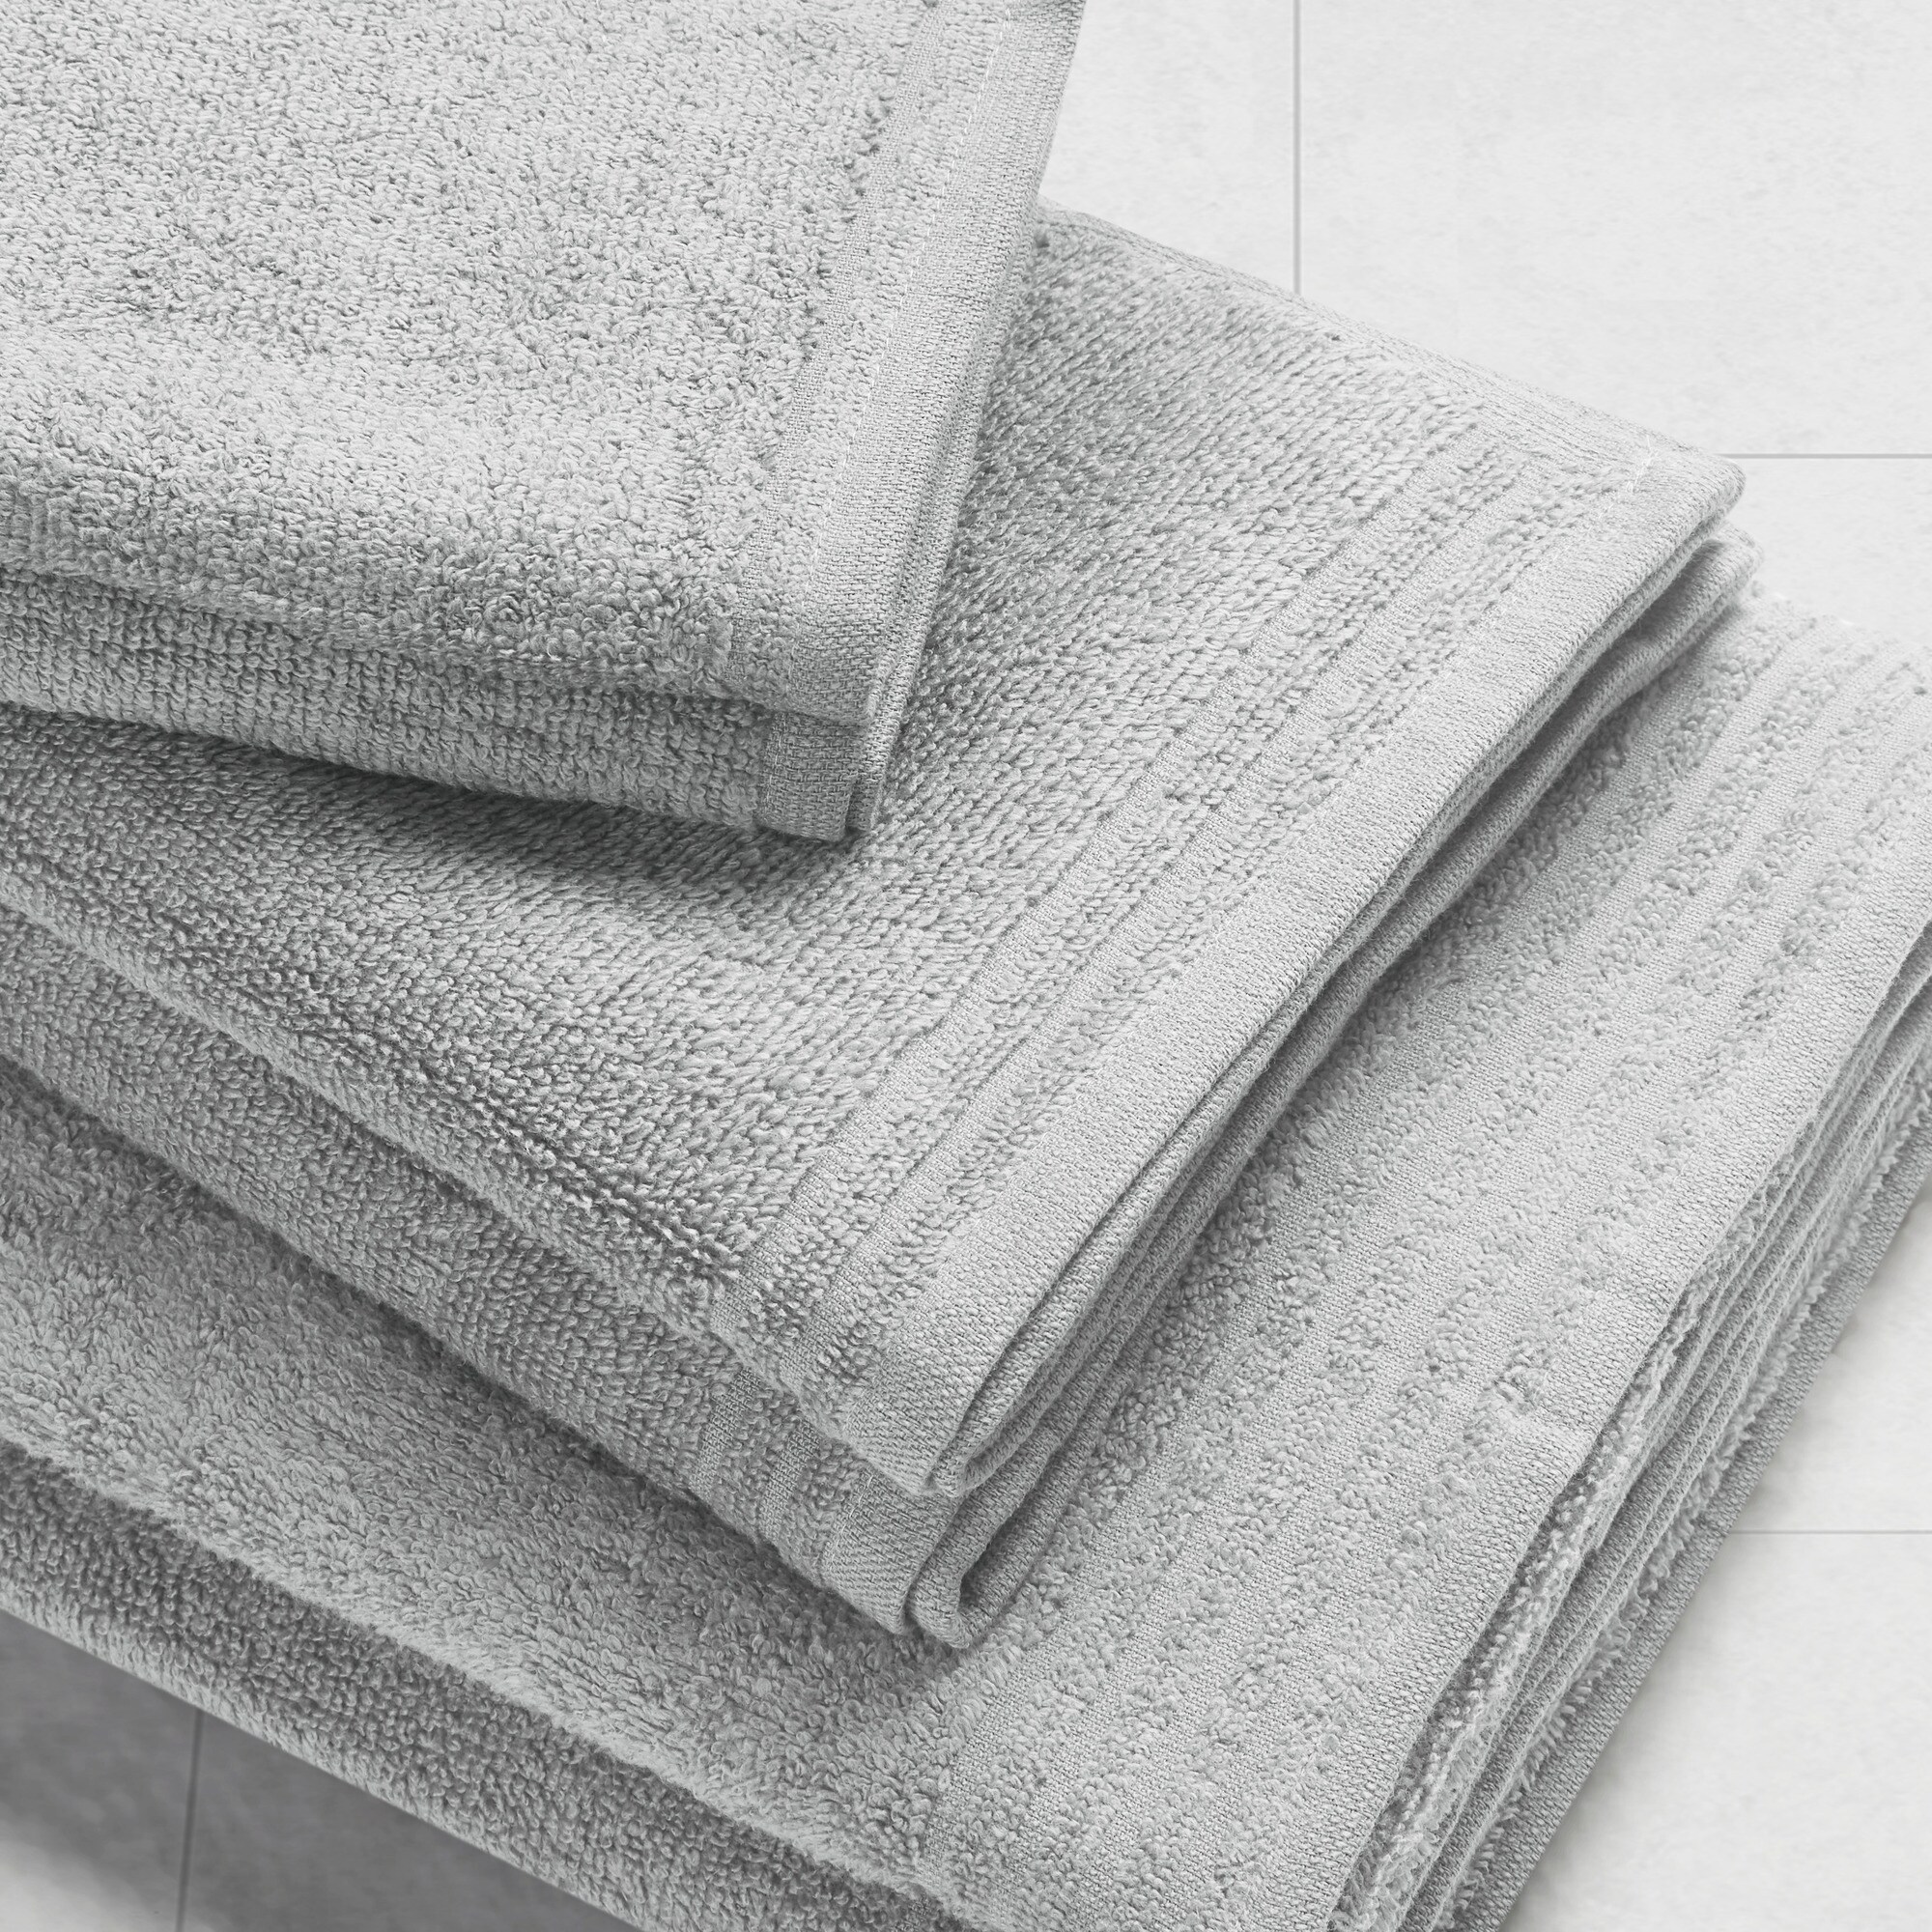 https://ak1.ostkcdn.com/images/products/is/images/direct/14da647d4373884366add9ede622631474f21368/510-Design-Big-Bundle-100%25-Cotton-Quick-Dry-12-Piece-Bath-Towel-Set.jpg